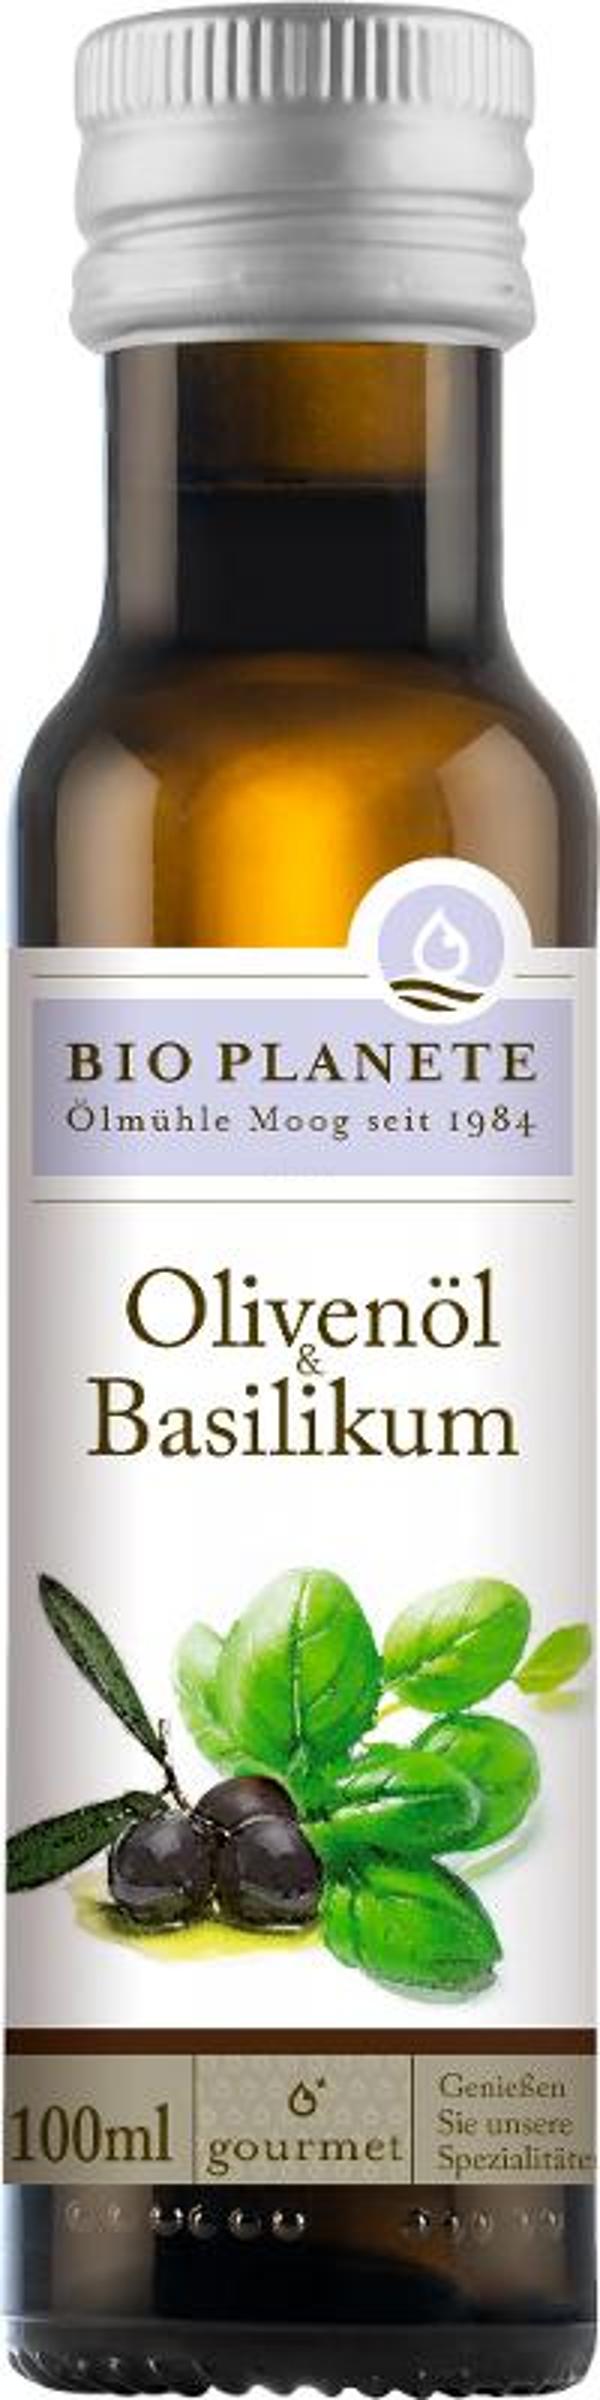 Produktfoto zu Olivengewürzöl mit Basilikum